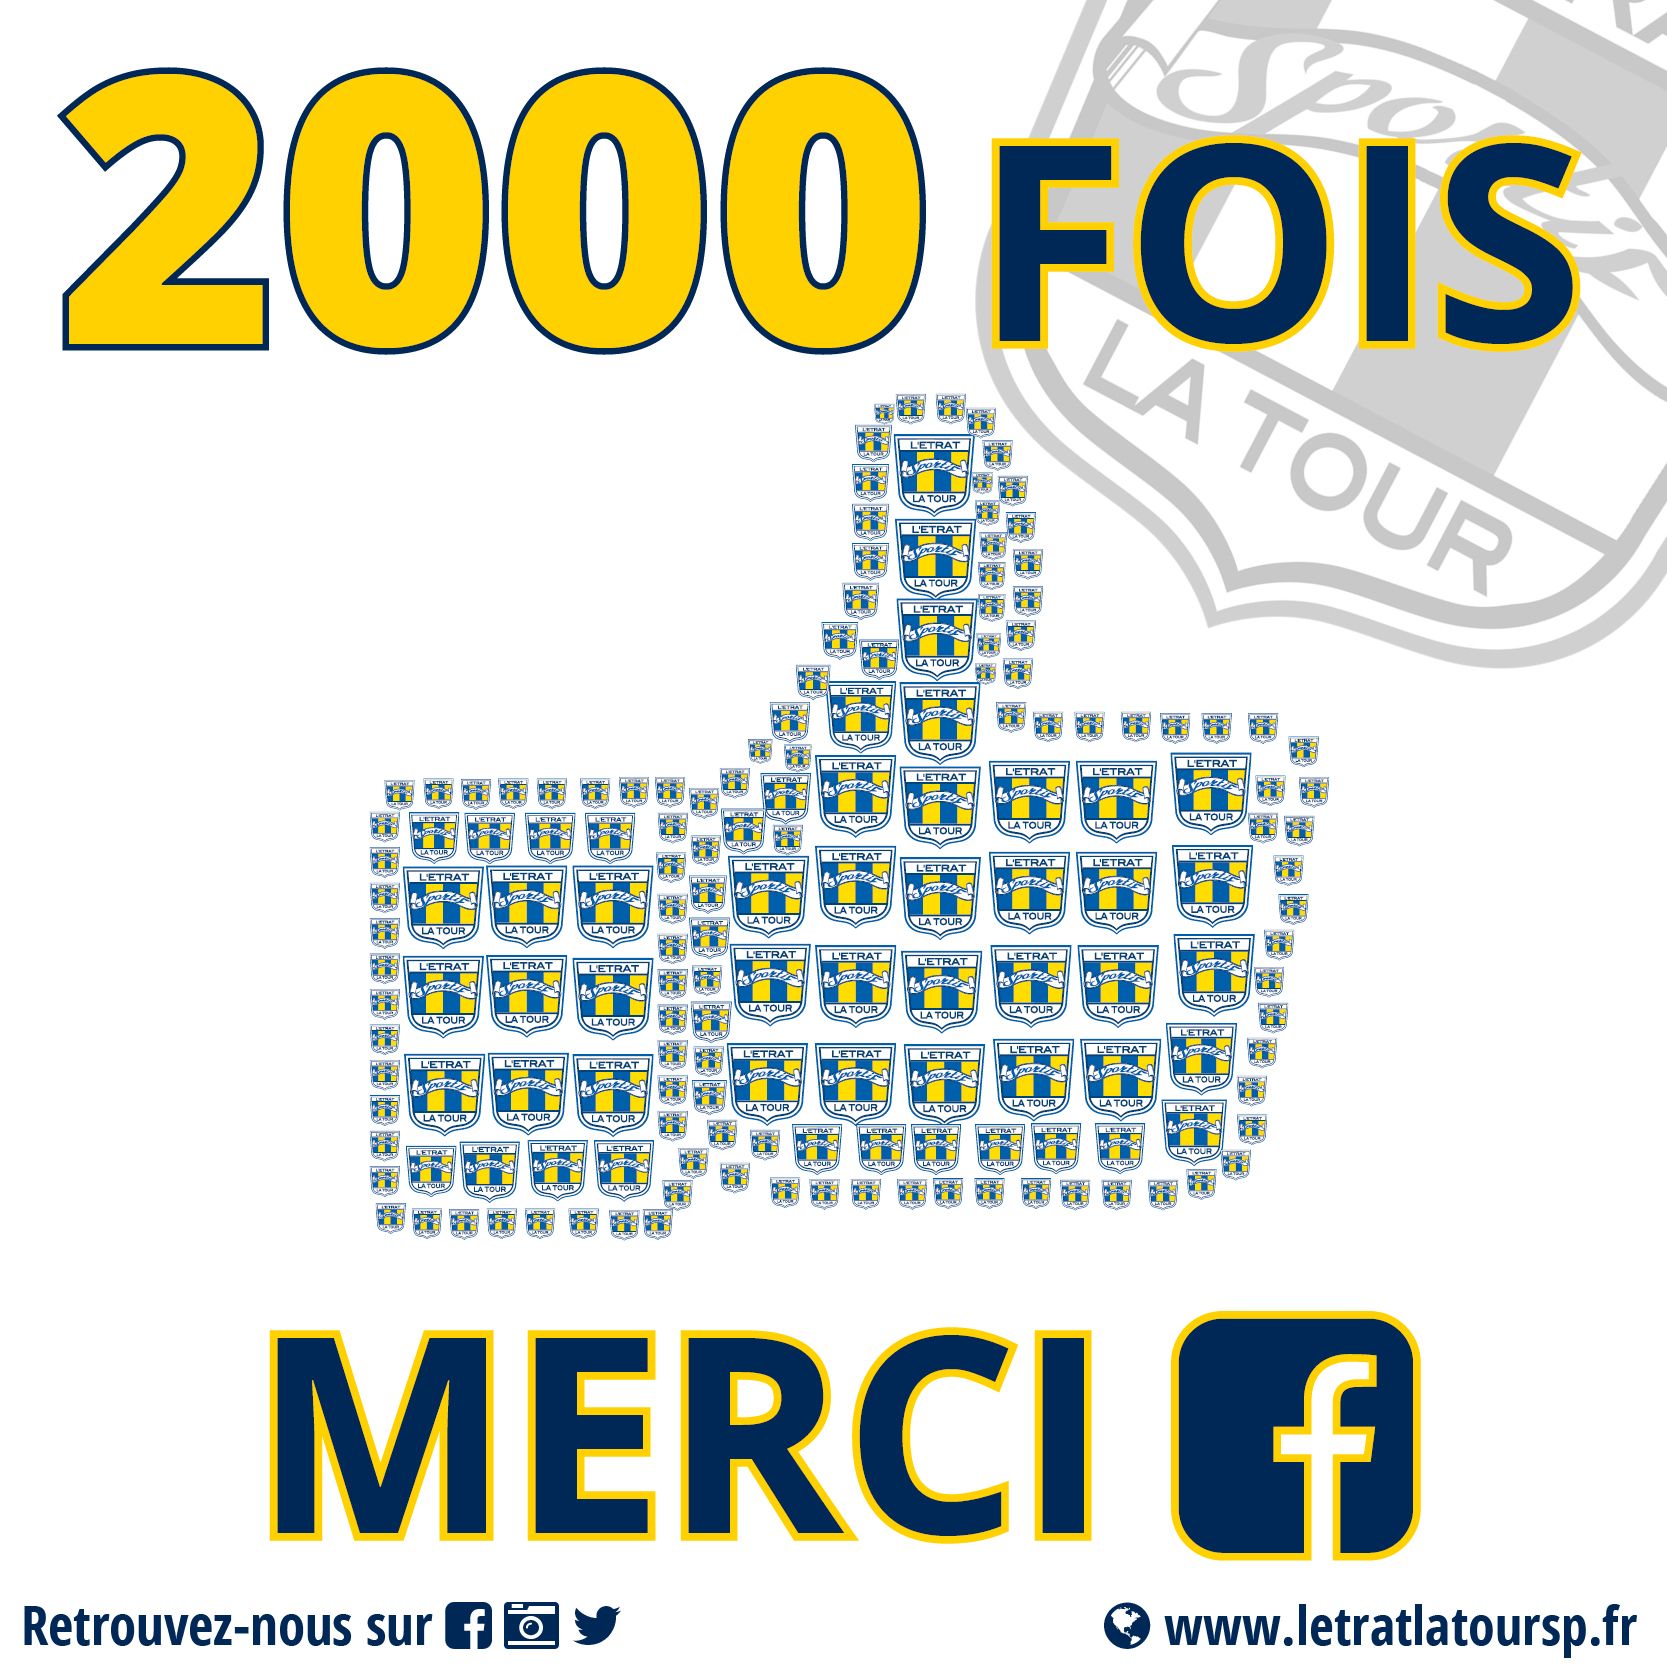 2000 FANS sur notre page FACEBOOK